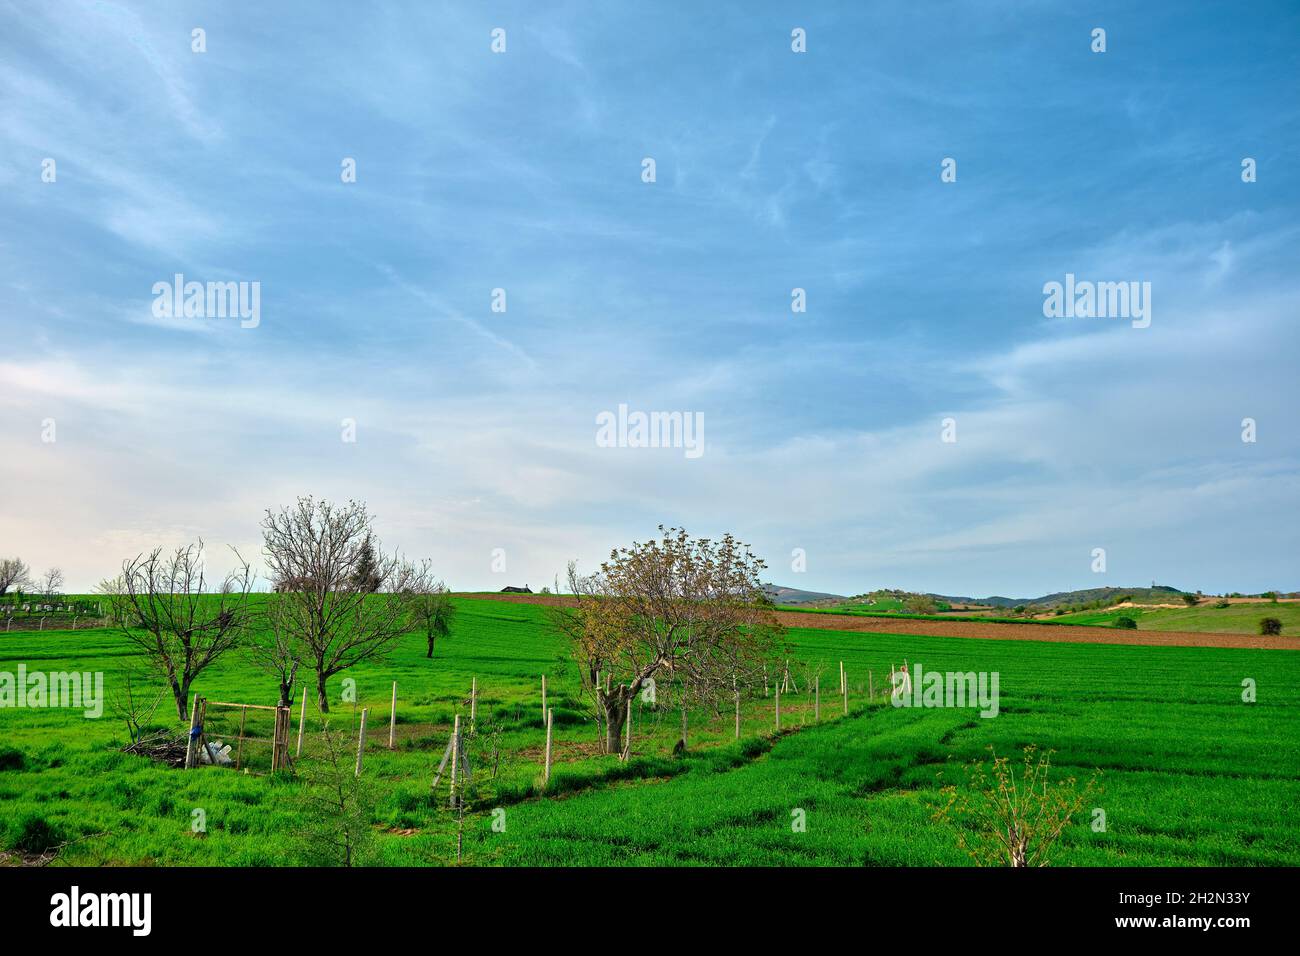 Landwirtschaftliche Feld mit grünen Pflanzen und Gras und kleine Erntefläche von Zäunen in Bursa Türkei während Sonnenuntergang und blauen Himmel Hintergrund bedeckt. Stockfoto